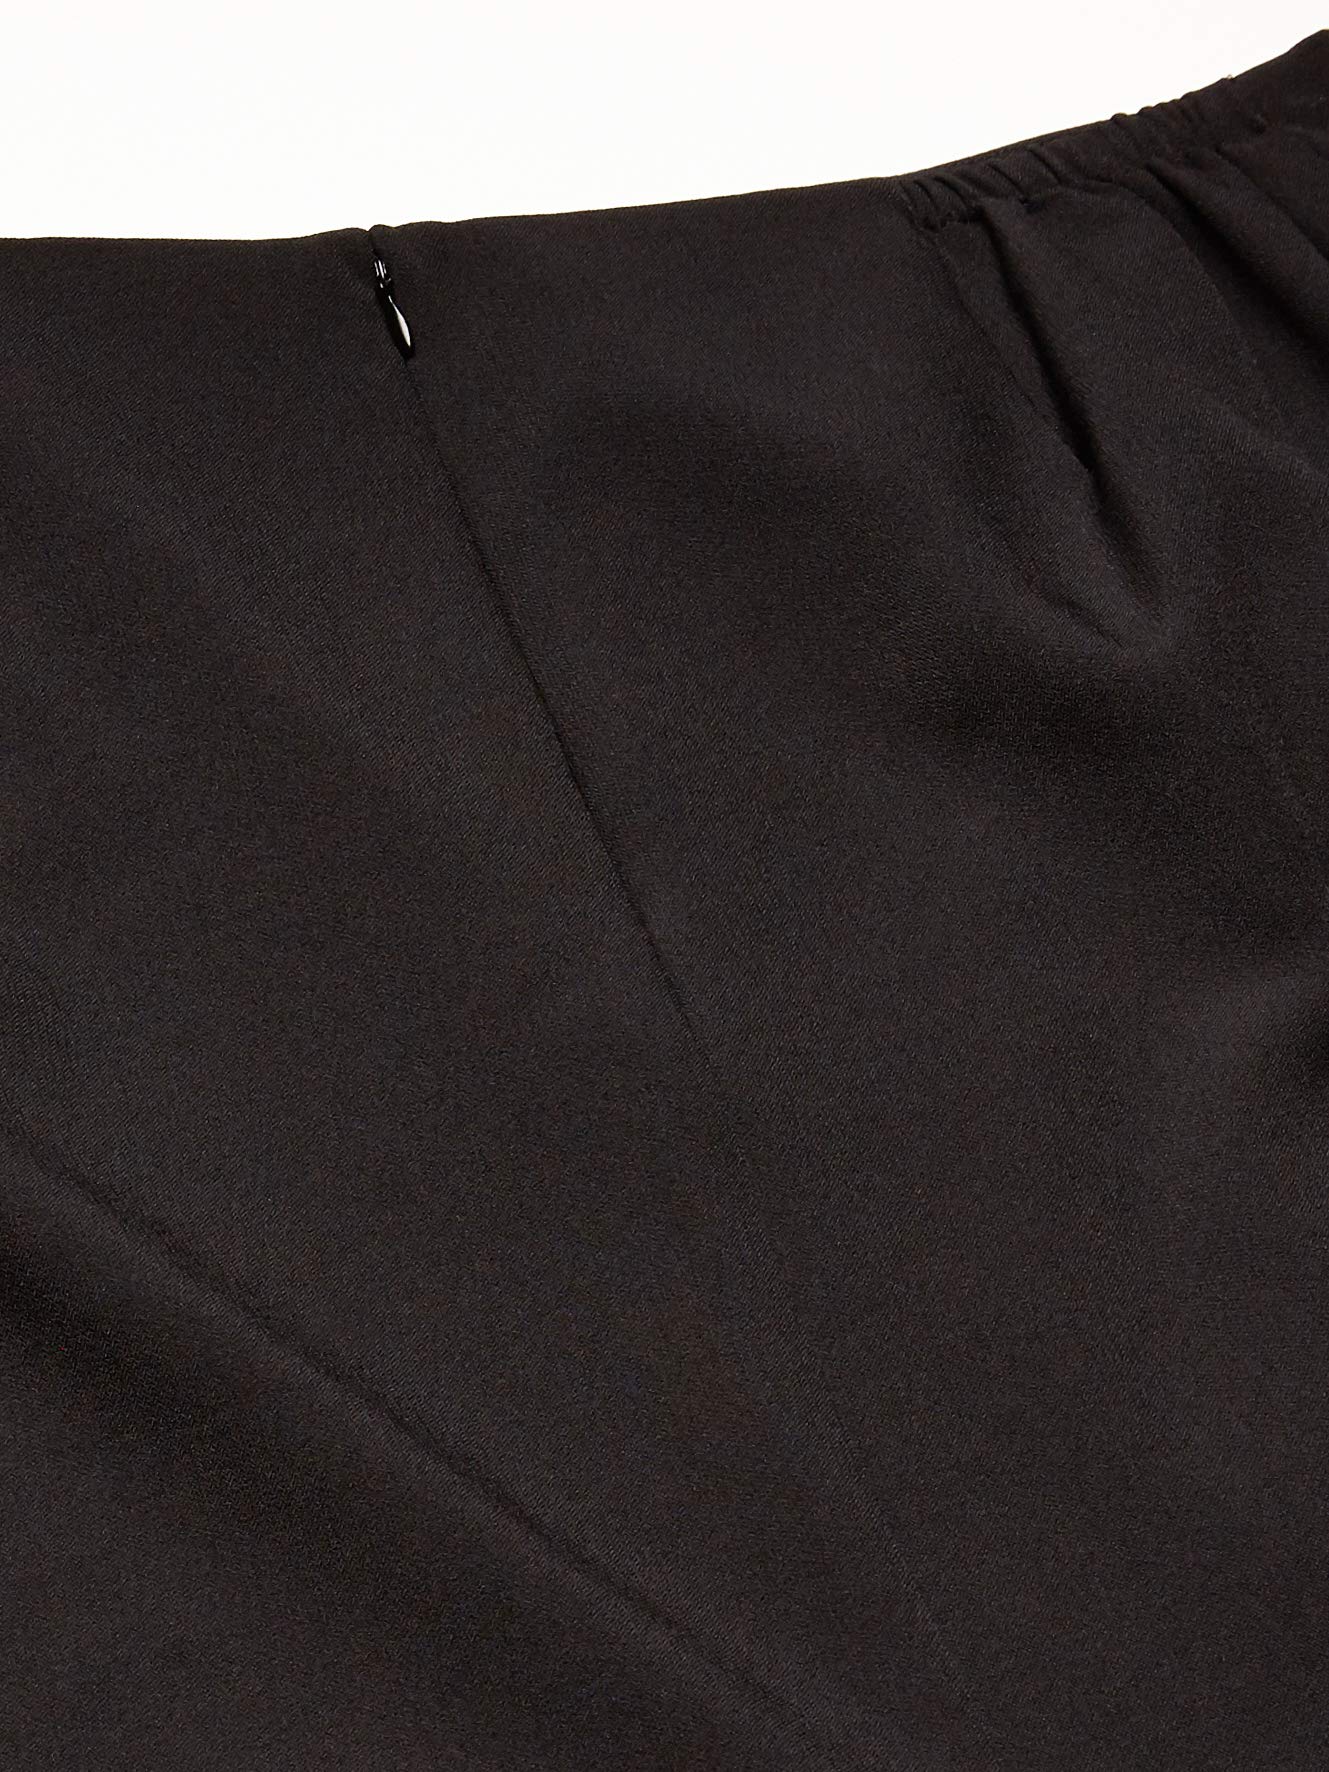 Kasper Women's Plus Size Stretch Crepe Skimmer Skirt